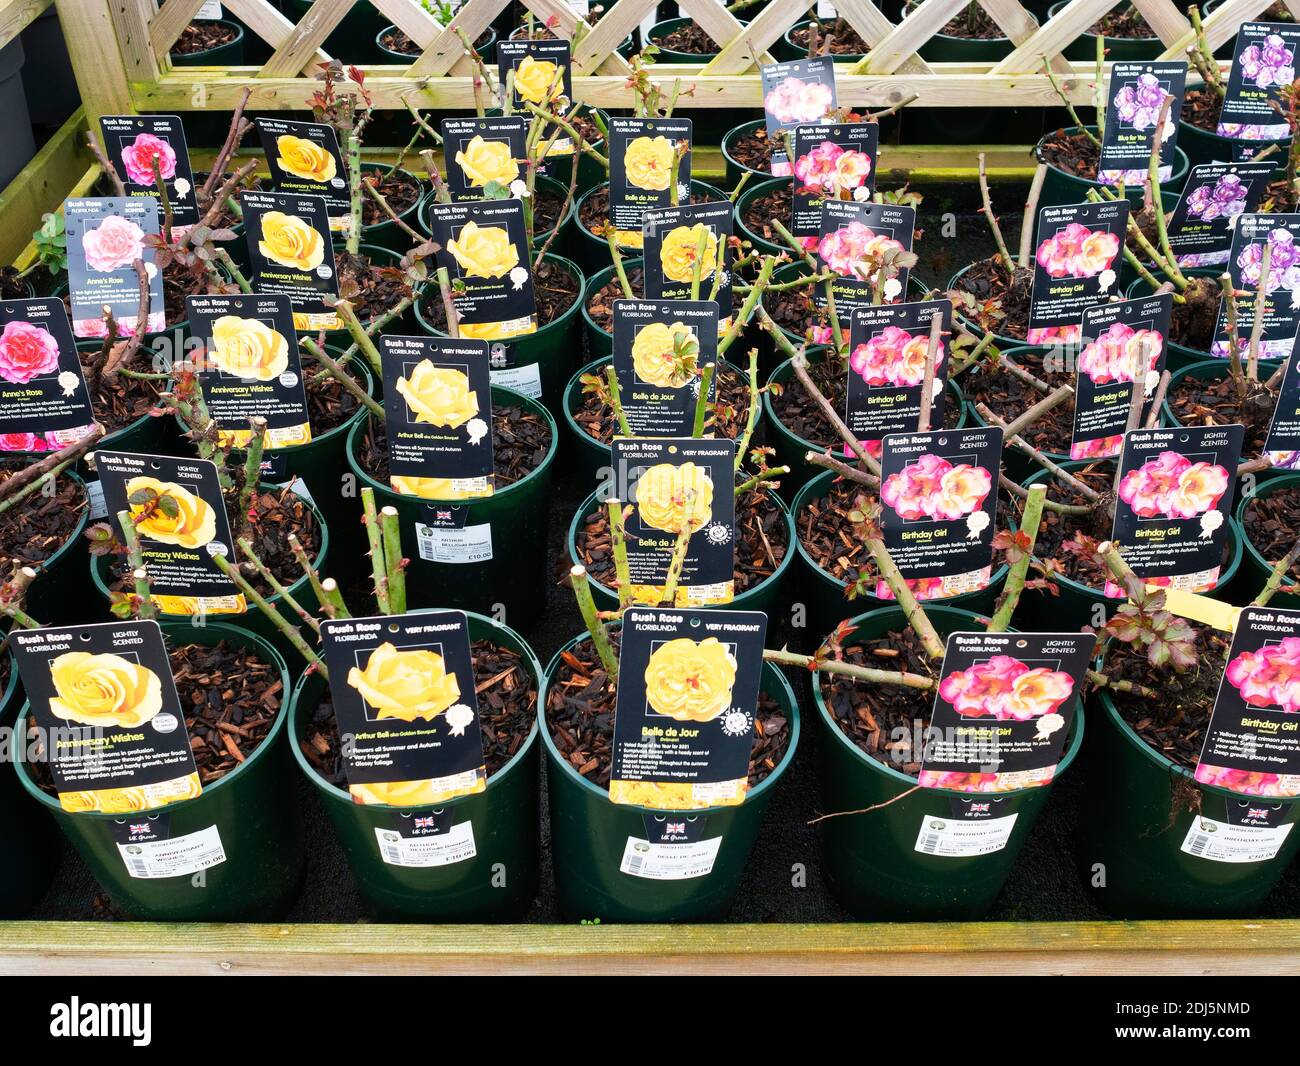 Buschrosen Floribunda mehrere Arten und Farben zum Verkauf in Ein Yorkshire Gartencenter Stockfoto